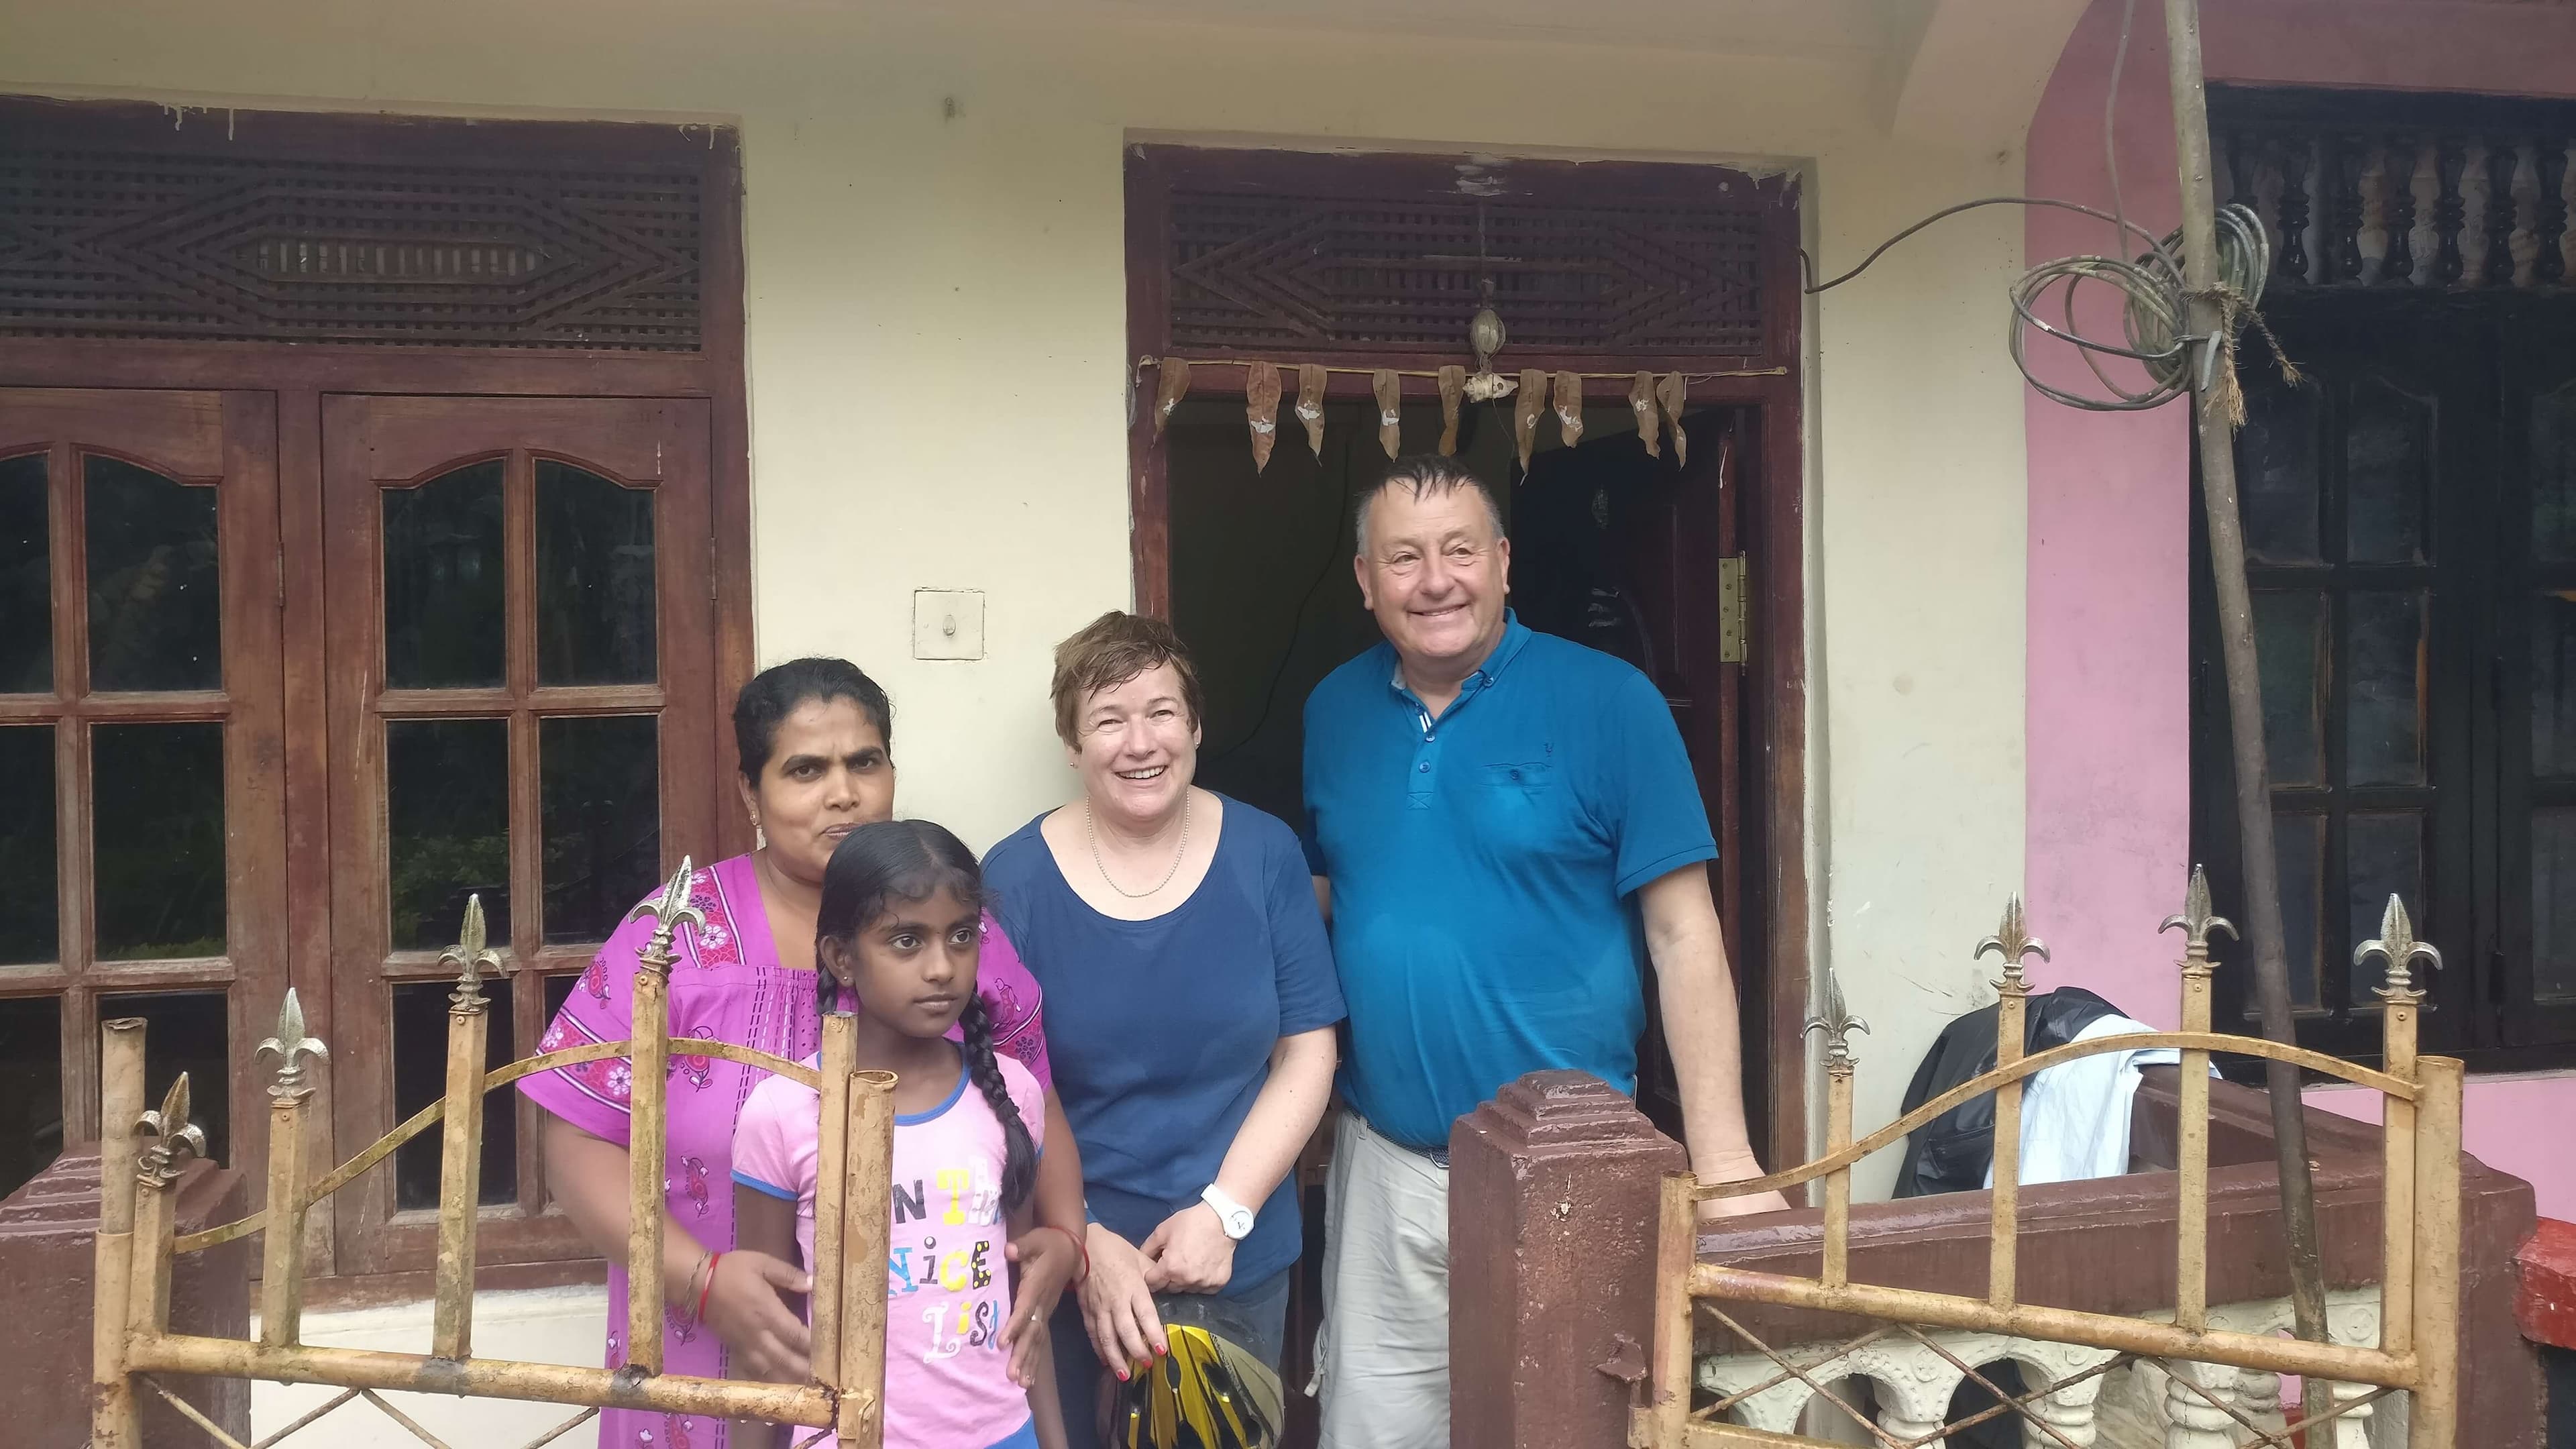 يستكشف السياح أسلوب حياة السكان المحليين في نوارا إليا وكاندي سريلانكا